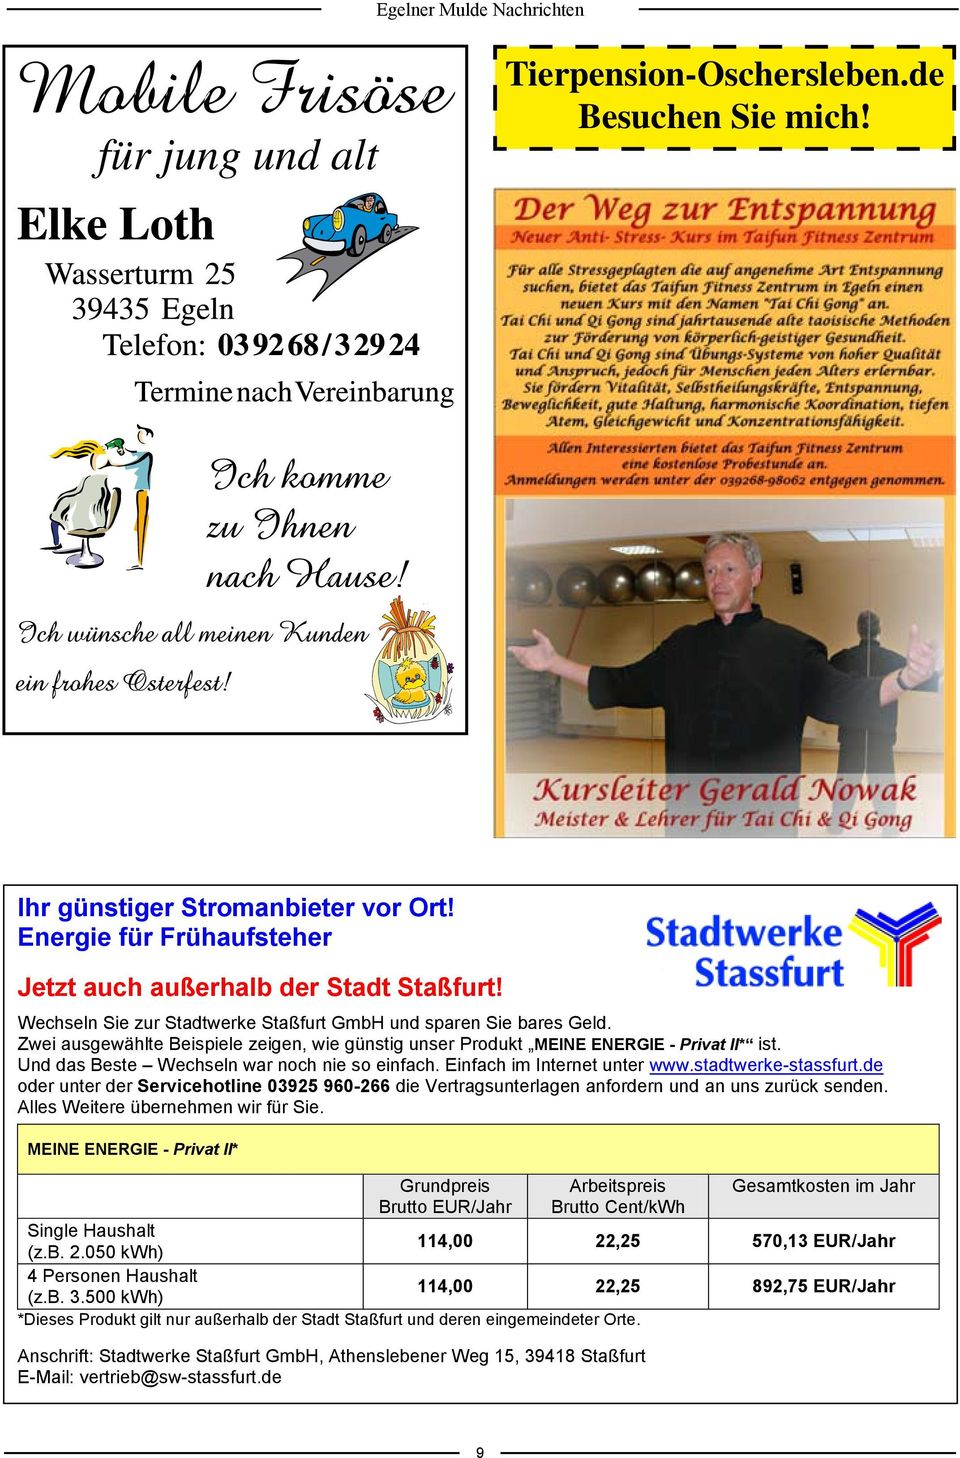 Und das Beste Wechseln war noch nie so einfach. Einfach im Internet unter www.stadtwerke-stassfurt.